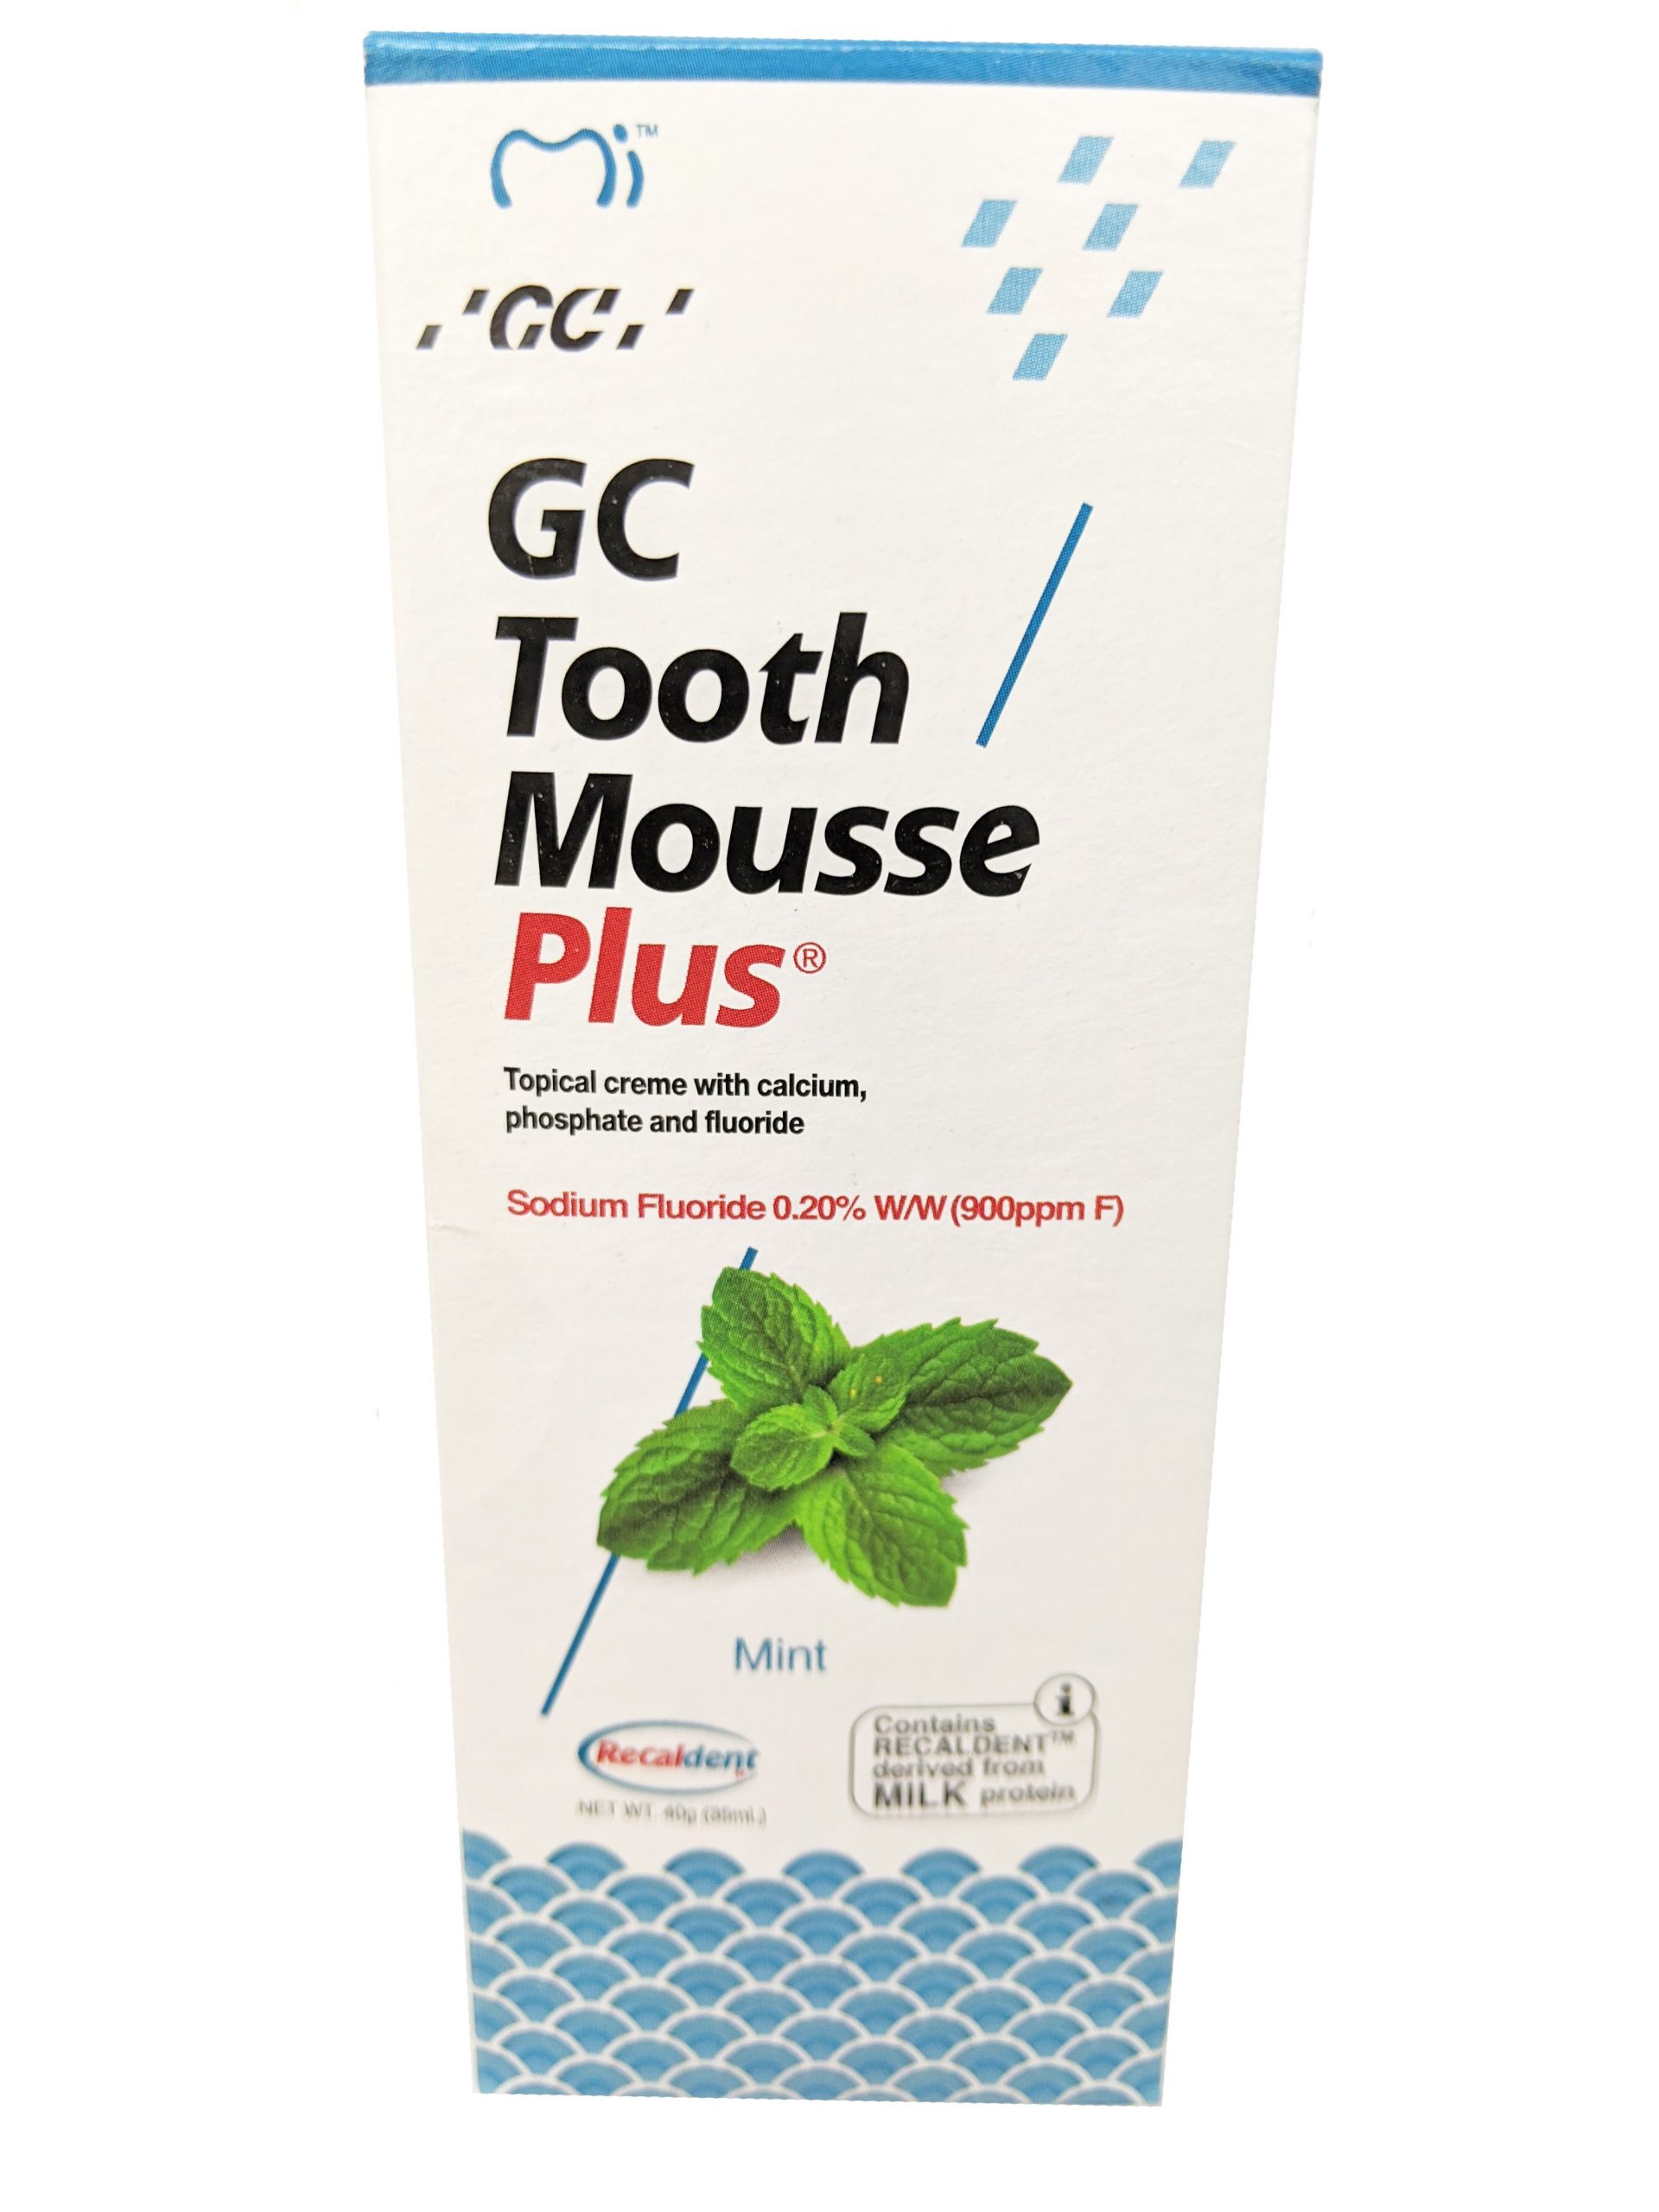 GC Tooth Mousse Plus - Mint - Central Park Dentist